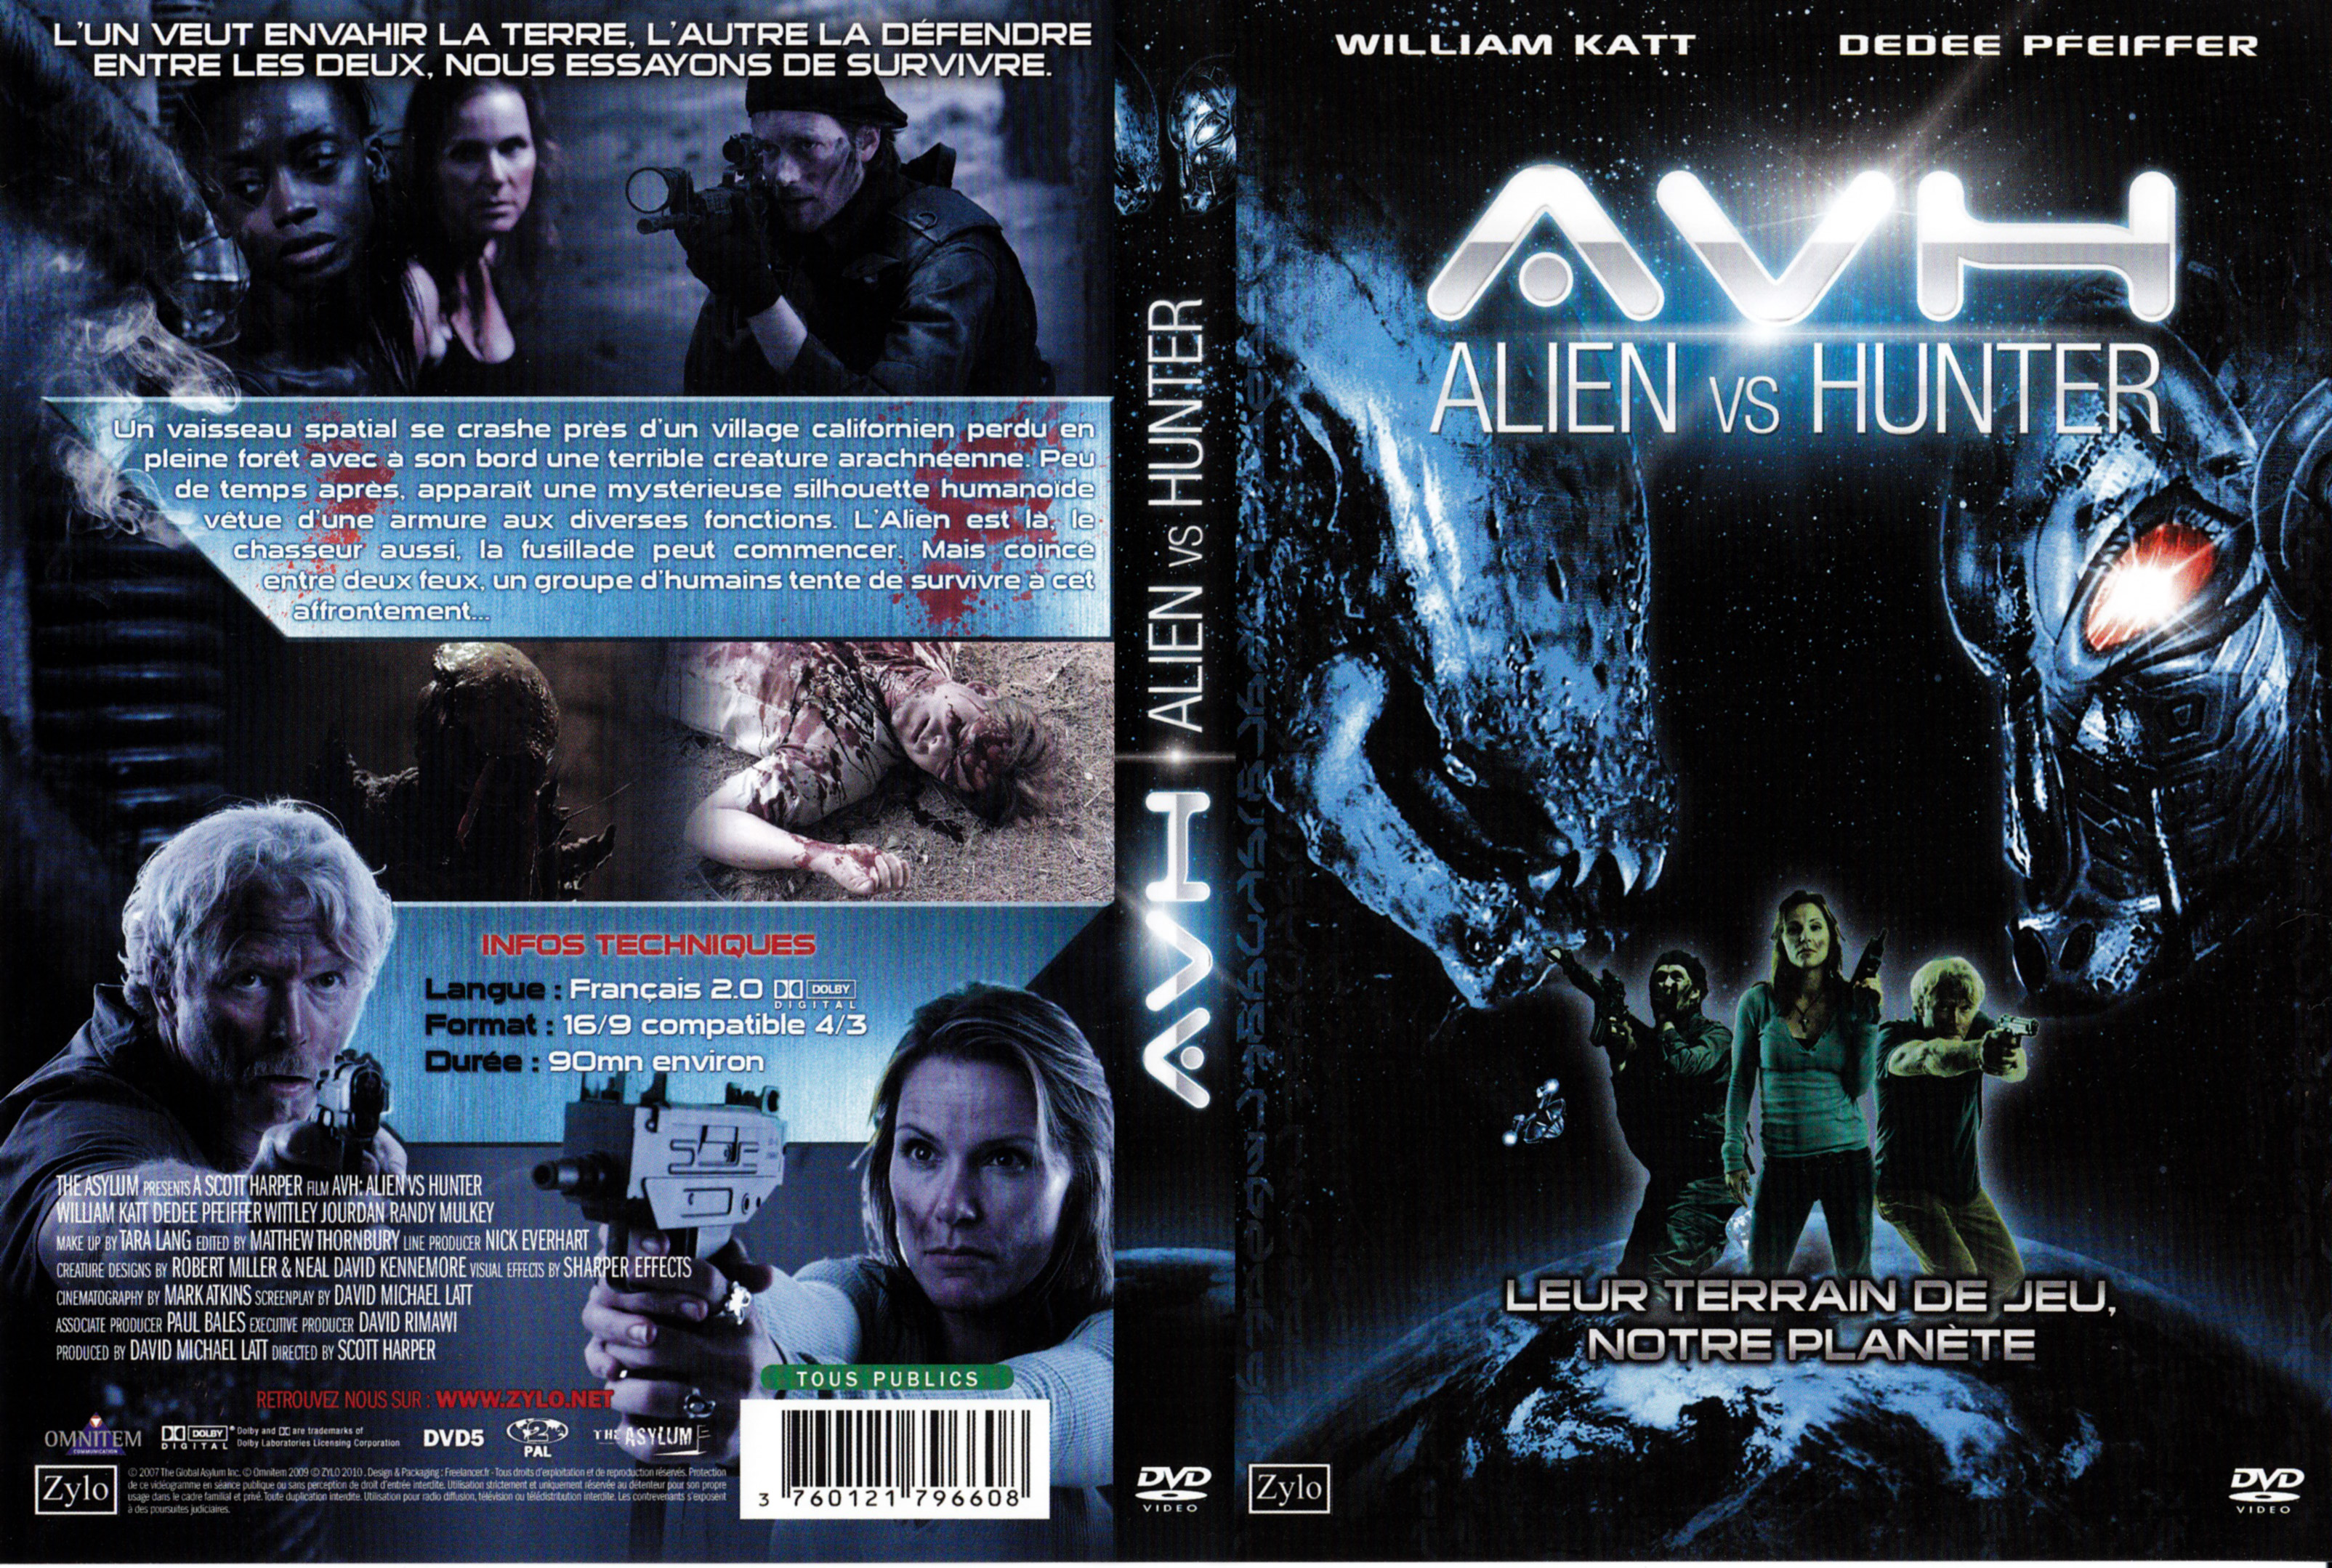 Jaquette DVD AVH alien vs hunter